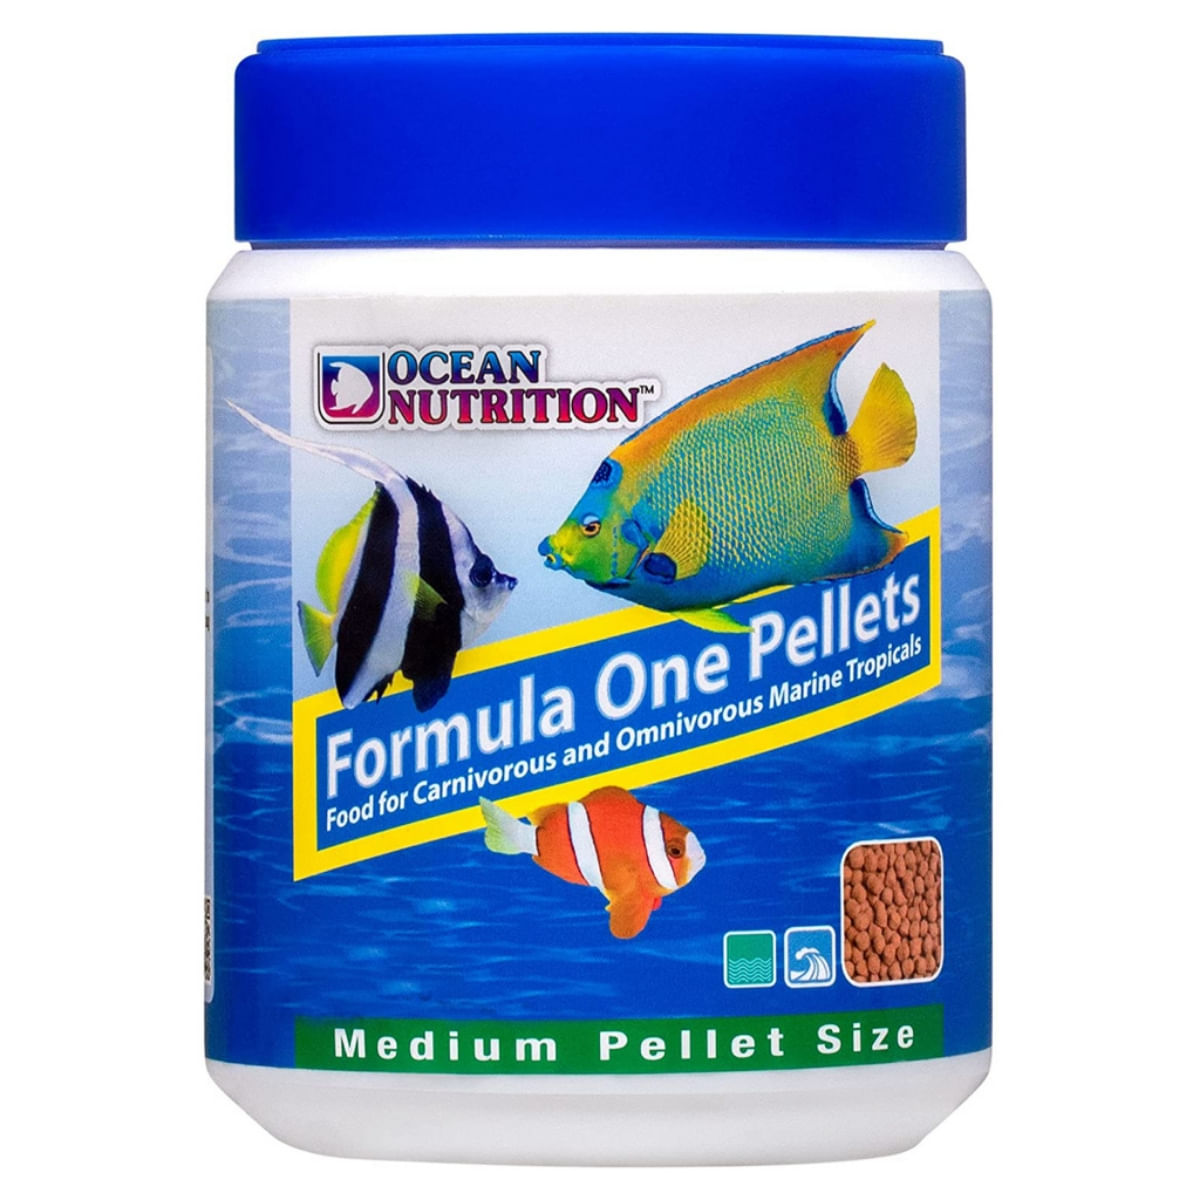 OCEAN NUTRITION Formula One Marine Pellets Medium, 200g 200g